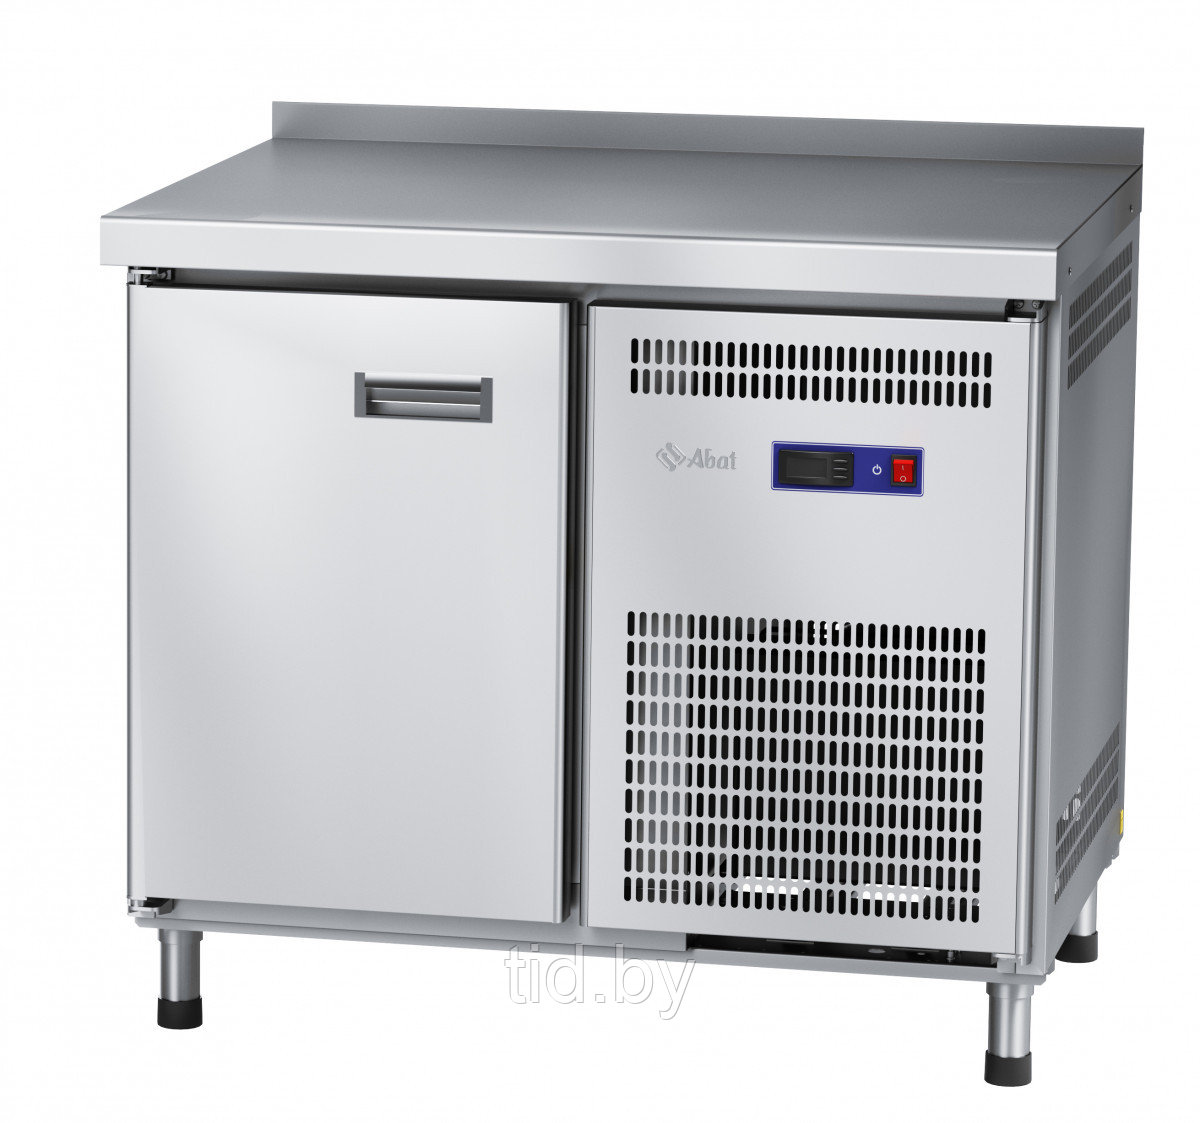 Стол холодильный среднетемпературный ABAT CХС 70 (нерж. сталь)